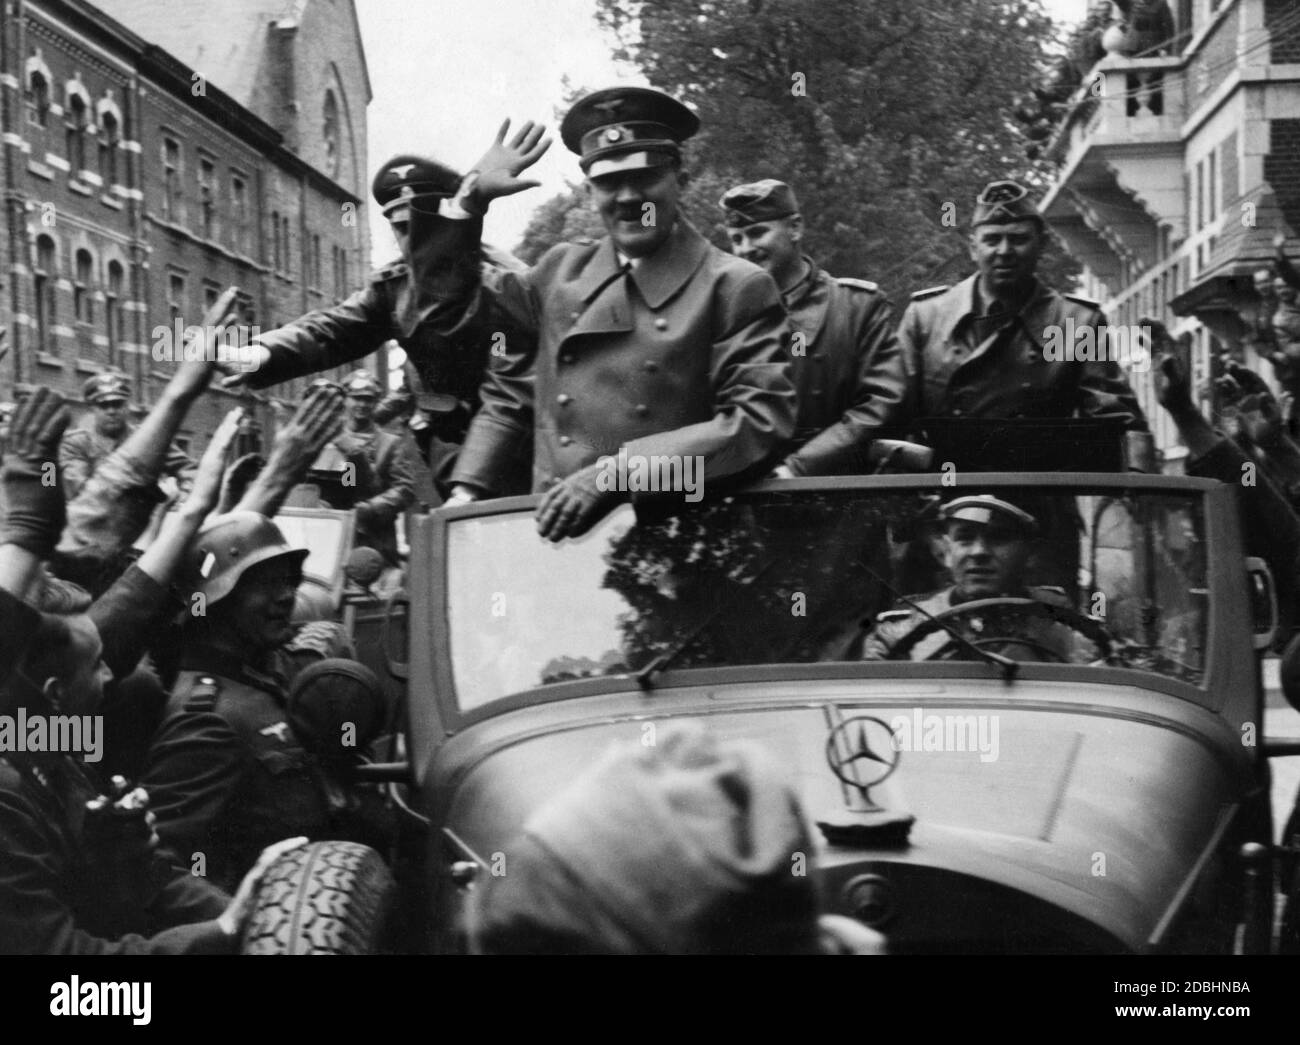 Adolf Hitler wird von seinem Fahrer Erich Kempka durch eine Stadt in Ostfrankreich gefahren. Rund um den Mercedes W31 begrüßen ihn Angehörige der Wehrmacht. Rechts von Hitler ist sein Adjutant Julius Schaub. Stockfoto